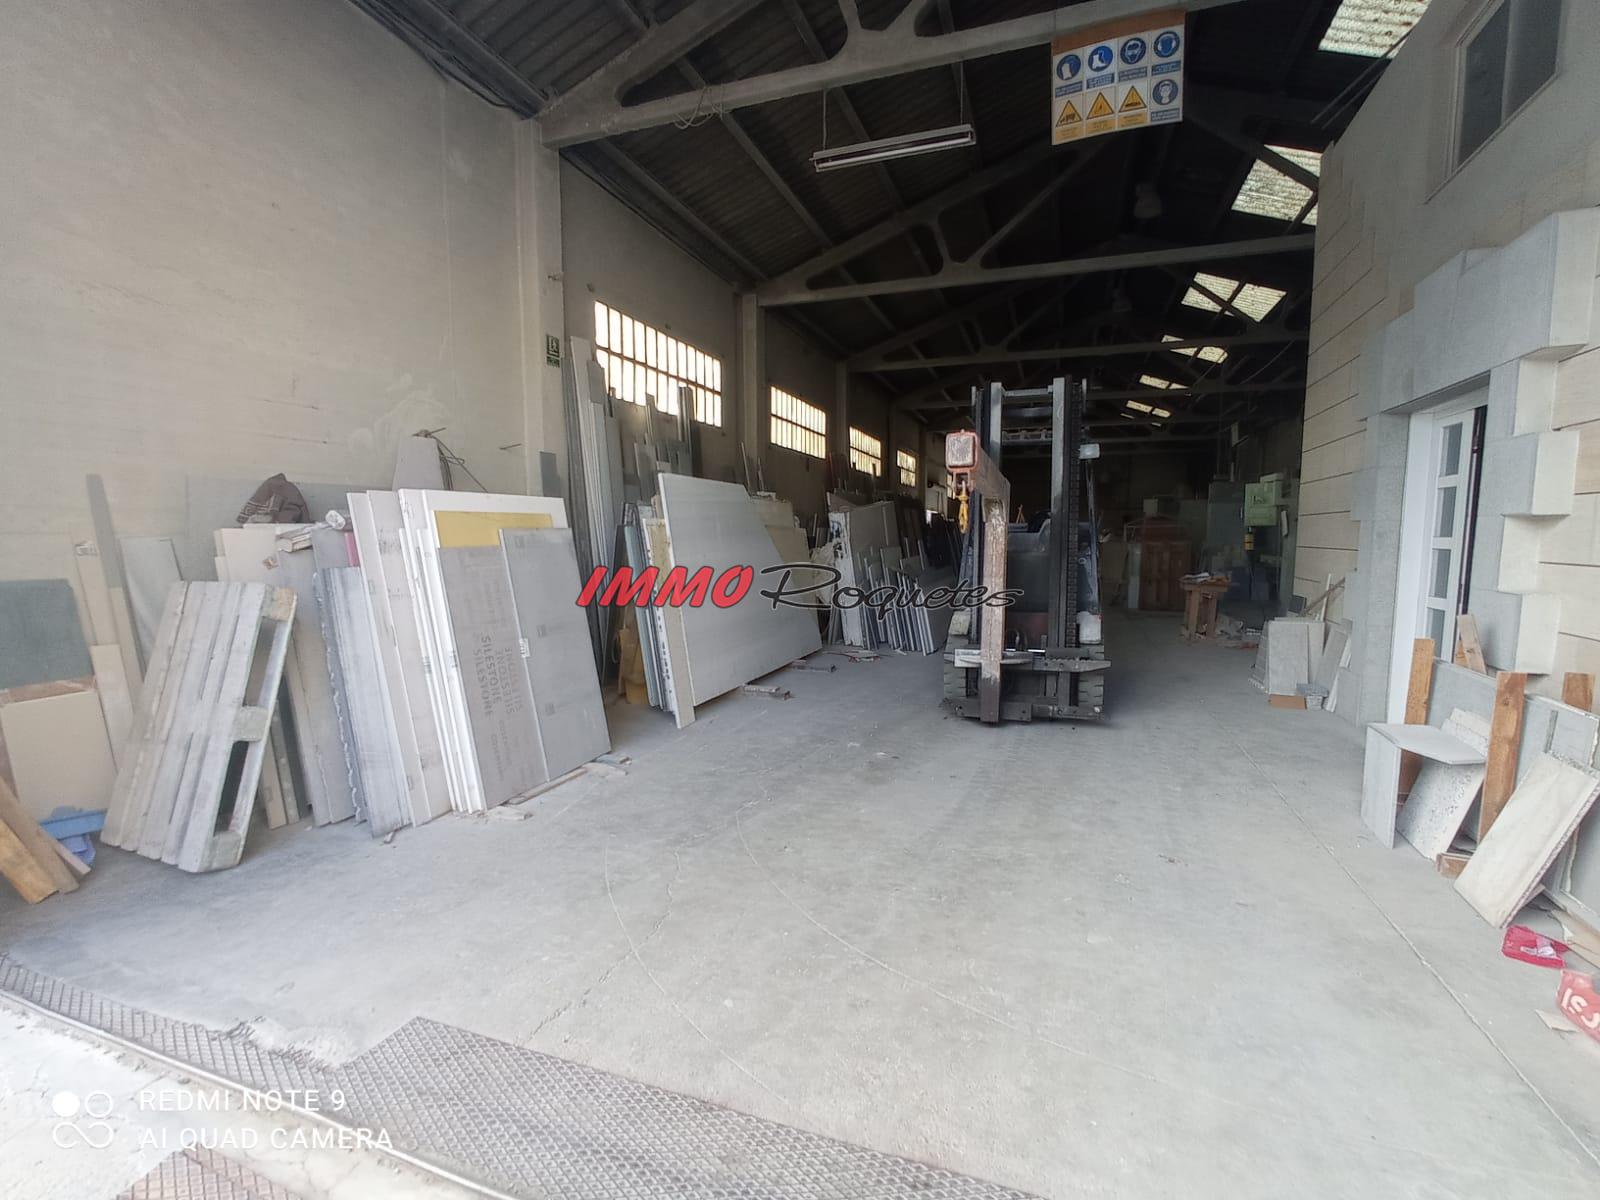 For sale of industrial plant/warehouse in Vilanova i la Geltrú